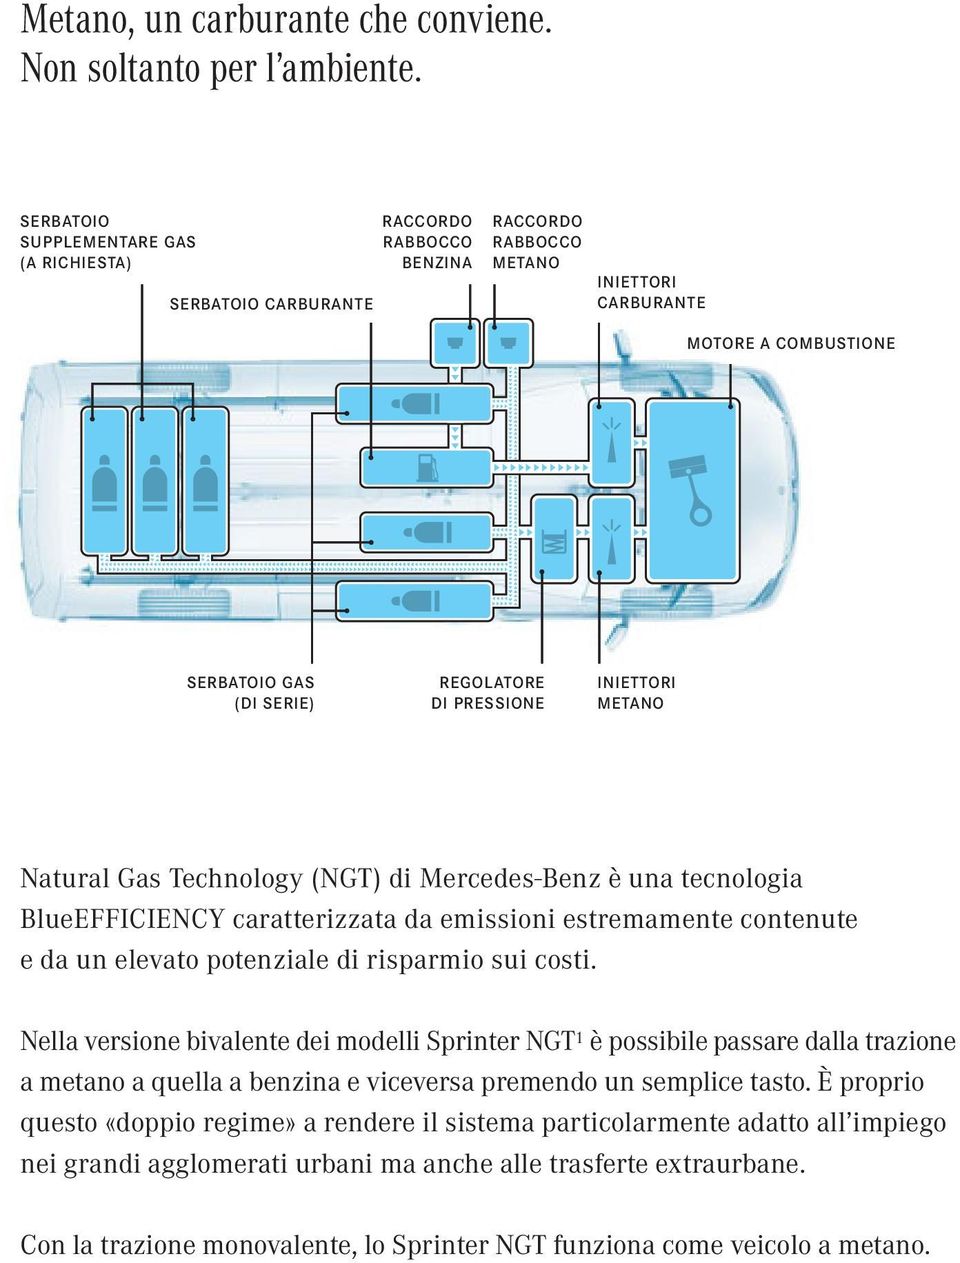 PRESSIONE INIETTORI METANO Natural Gas Technology (NGT) di Mercedes-Benz è una tecnologia BlueEFFICIENCY caratterizzata da emissioni estremamente contenute e da un elevato potenziale di risparmio sui